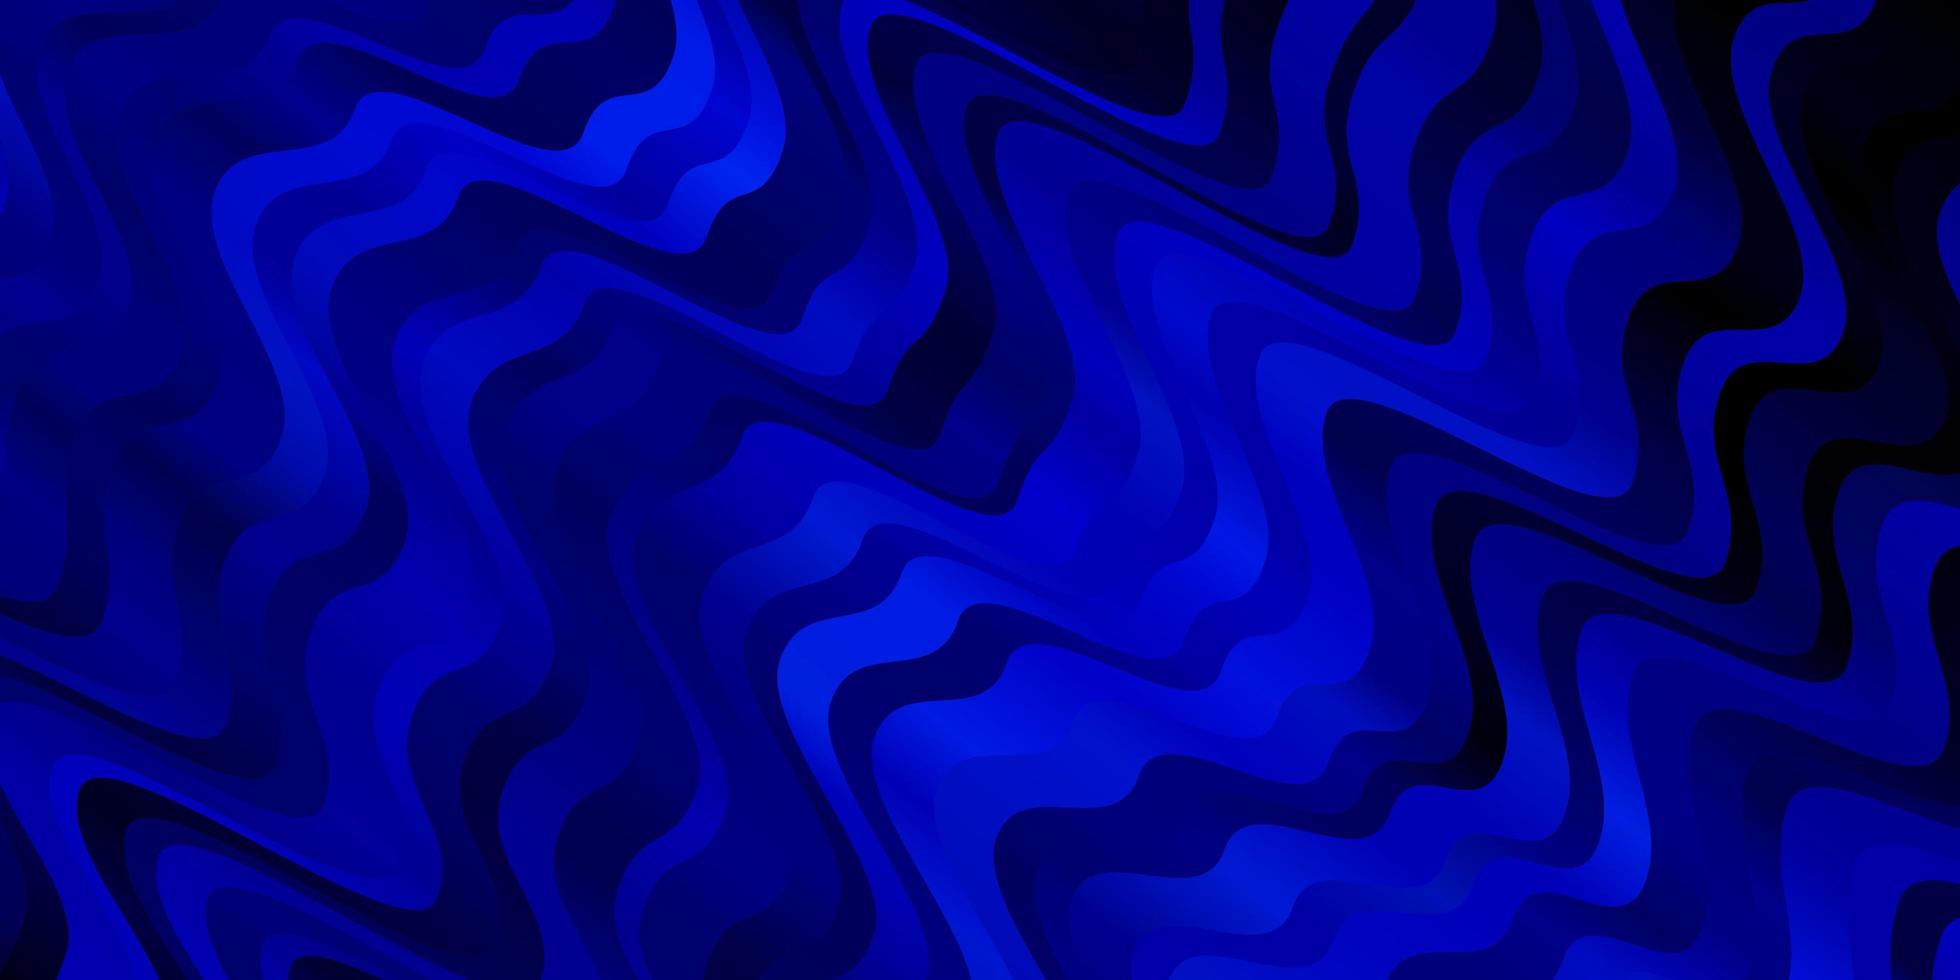 Diseño vectorial azul oscuro con arco circular. vector